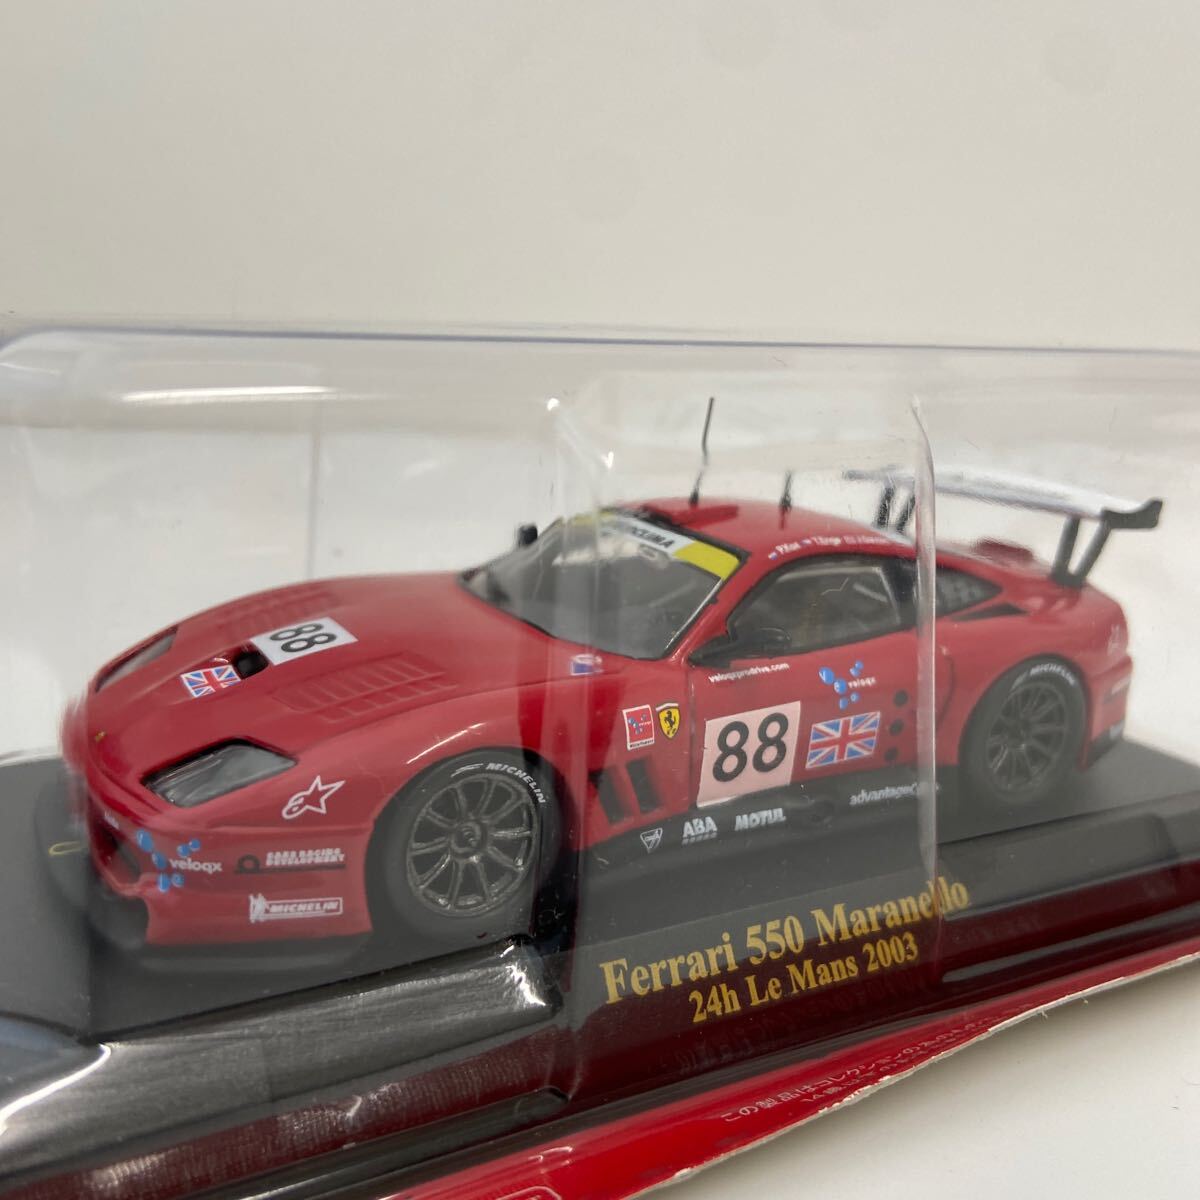 アシェット 公式フェラーリF1コレクション 1/43 vol.63 550 Maranello フレデリック・ドール 2003年 #88 Ferrari ミニカー モデルカー_画像1